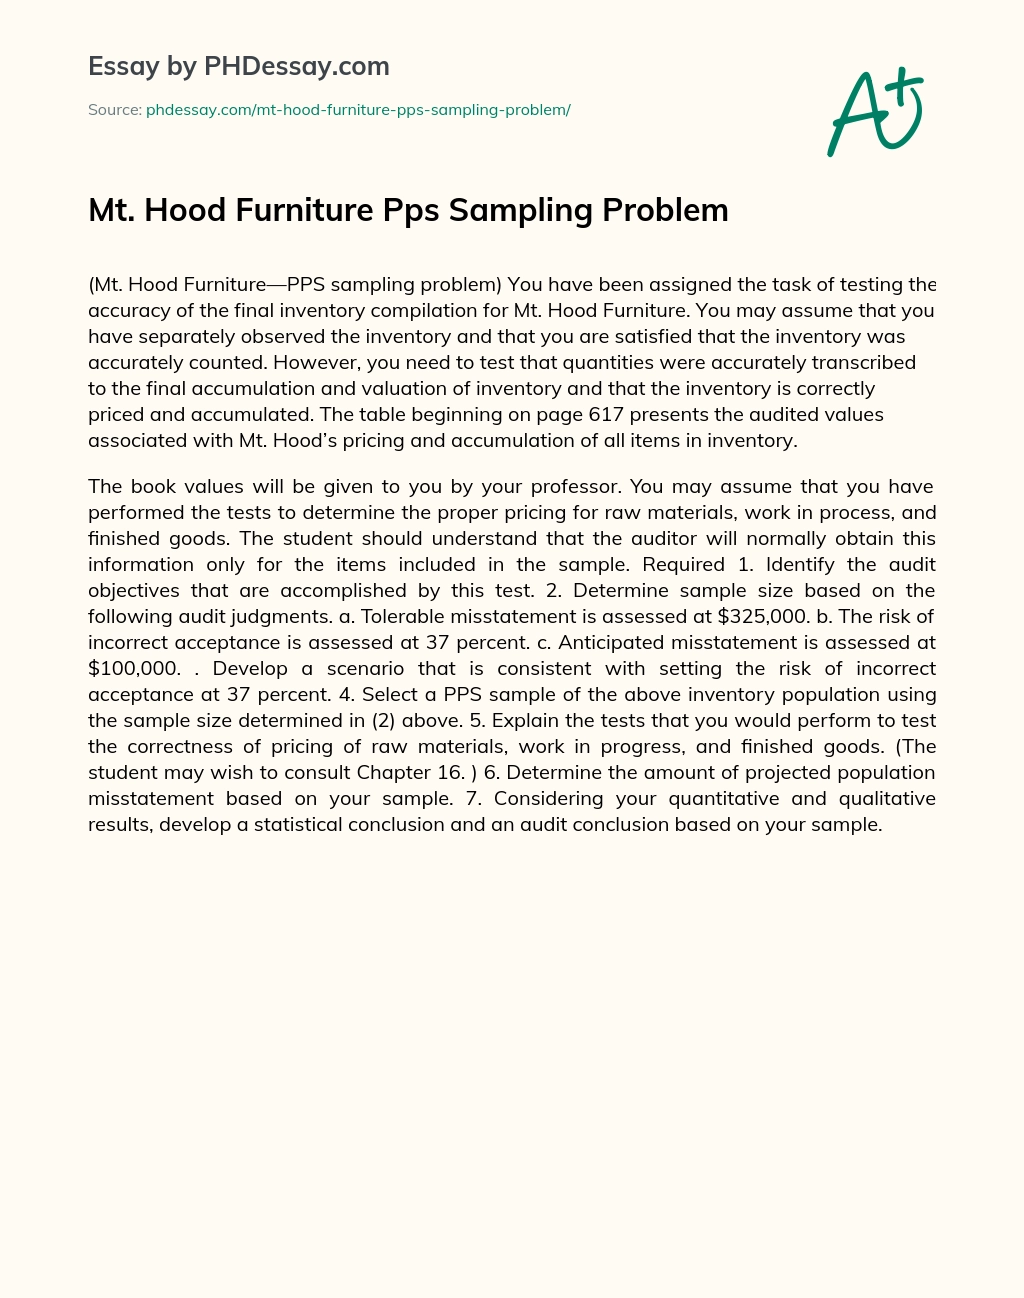 Mt. Hood Furniture Pps Sampling Problem essay